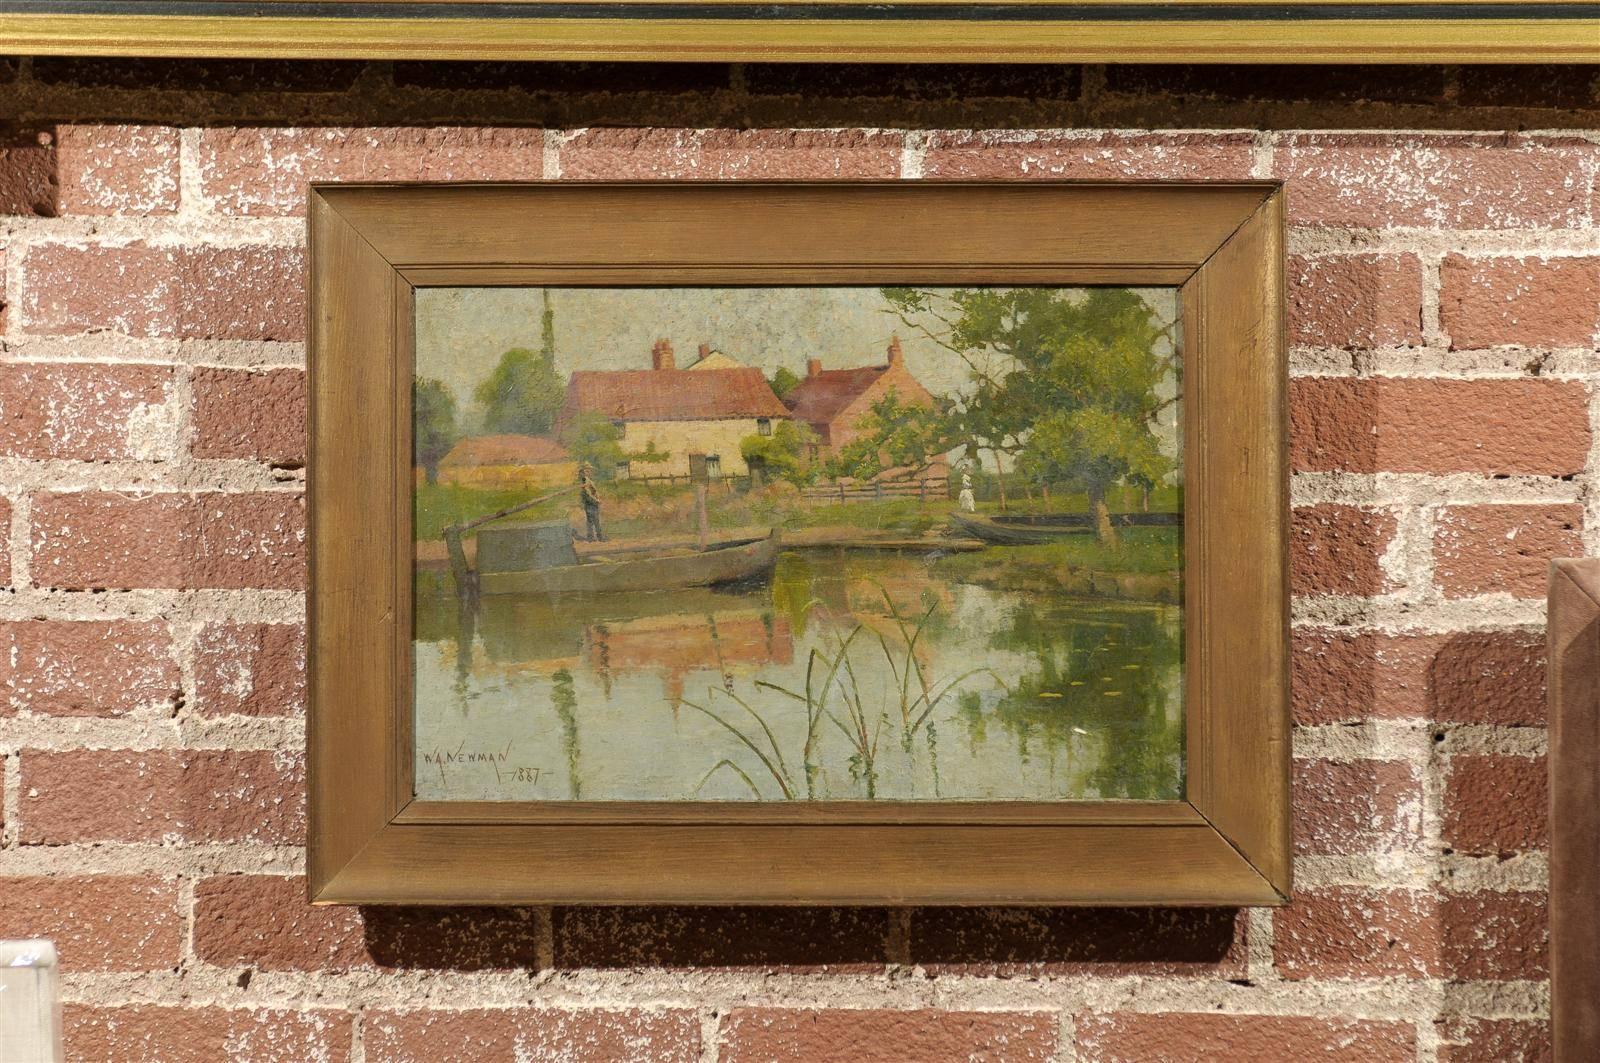 Charmant paysage anglais impressionniste du début du 19e siècle représentant des bateaux amarrés dans un étang au premier plan avec un gentleman debout le long de la rive, et des bâtiments provençaux et une dame victorienne marchant à